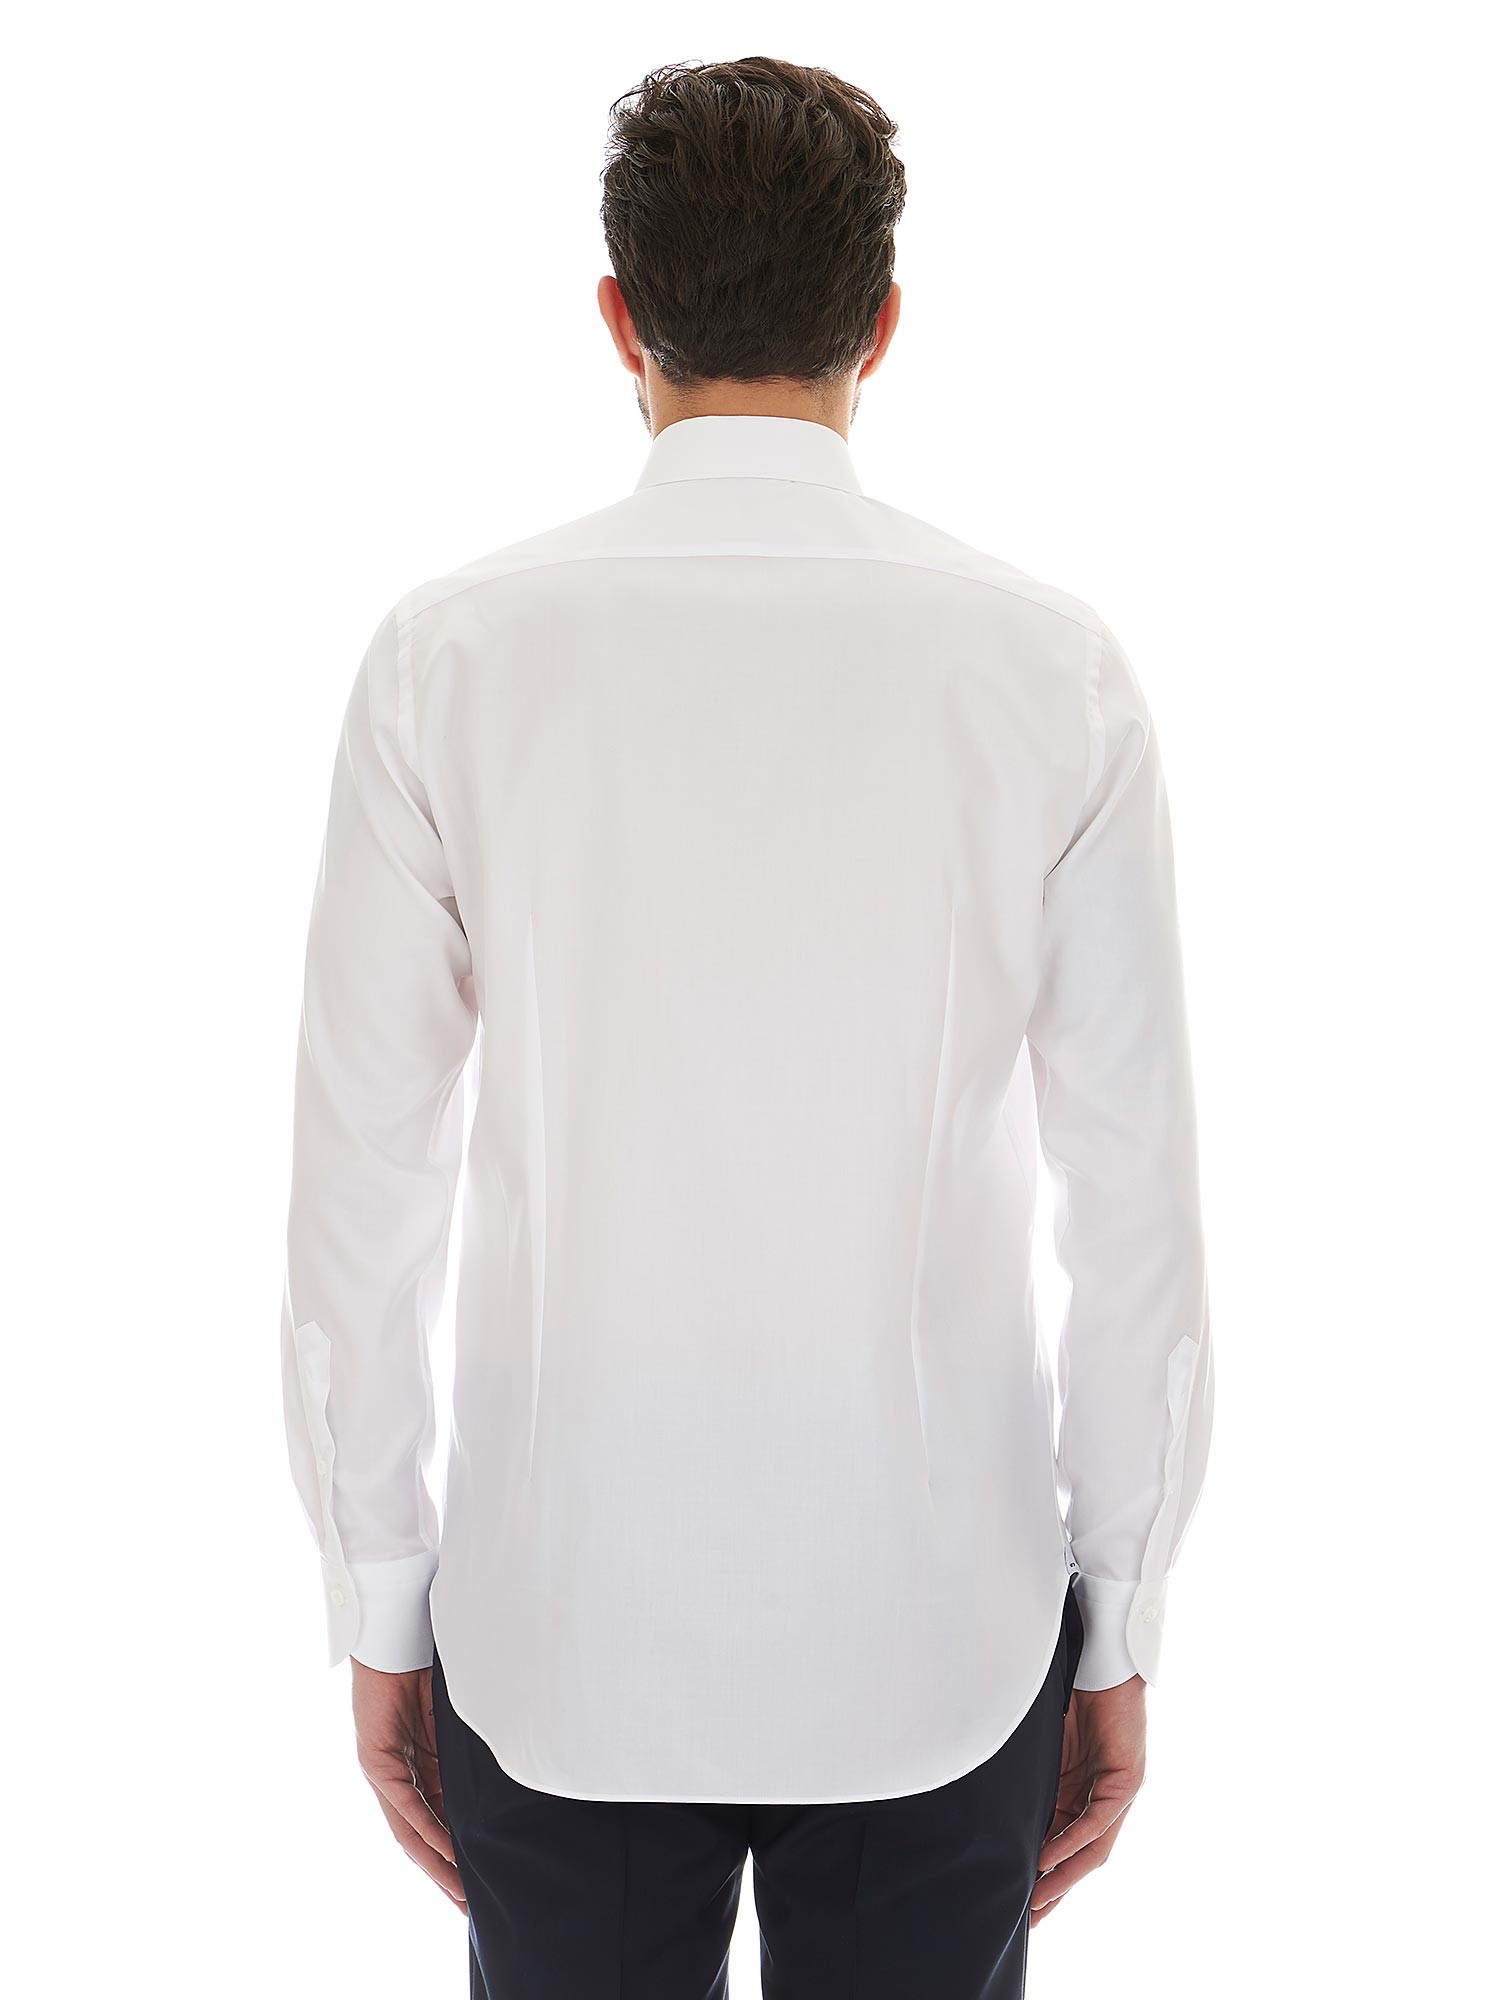 Càrrel elegant white shirt in twill with cutaway collar